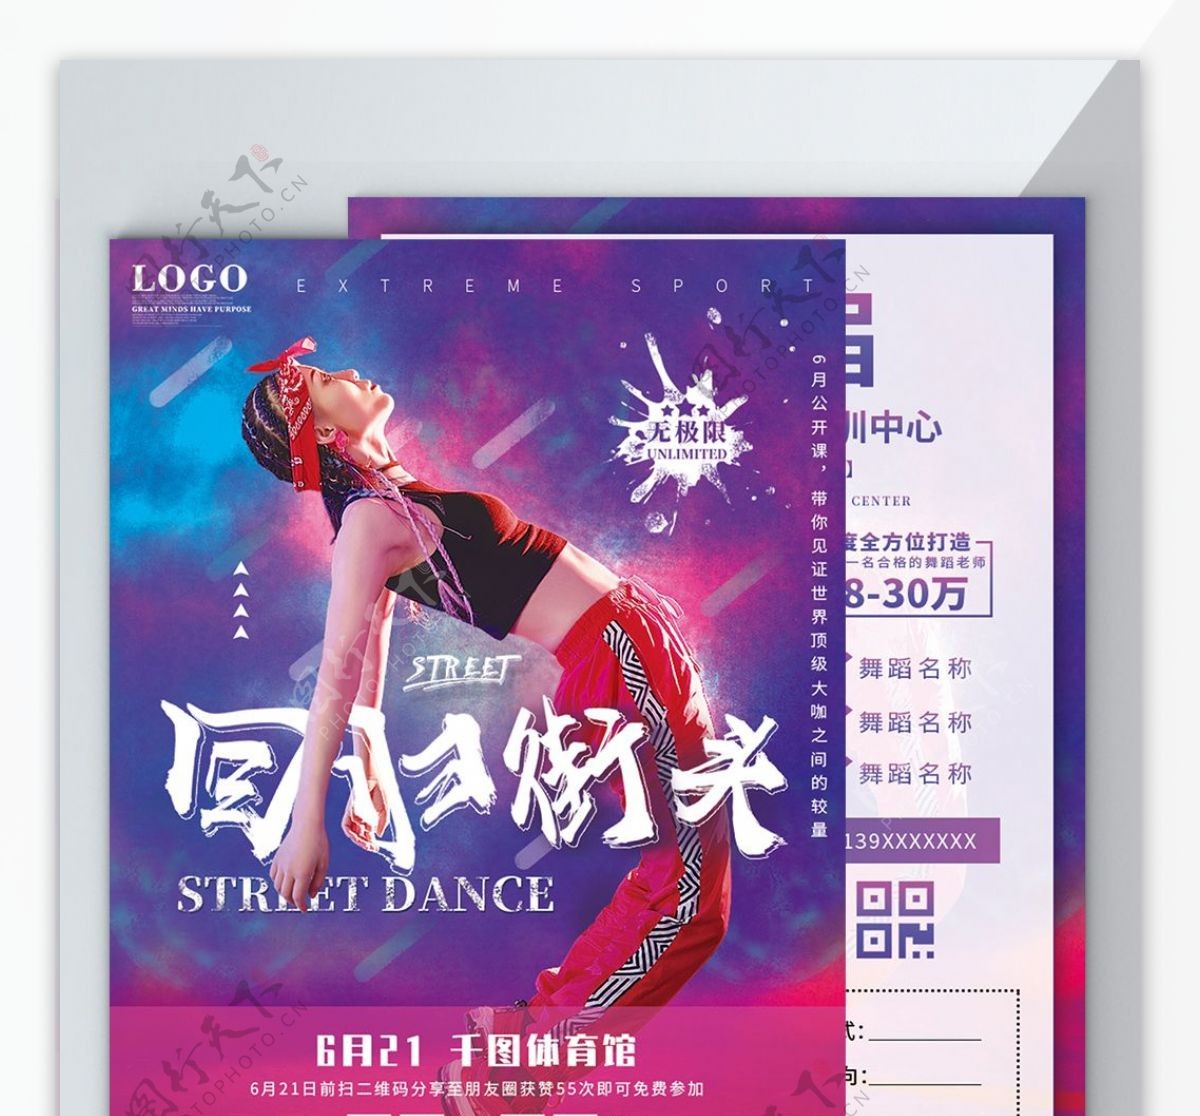 镭射炫酷街舞蹈运动健身培训班宣传单海报